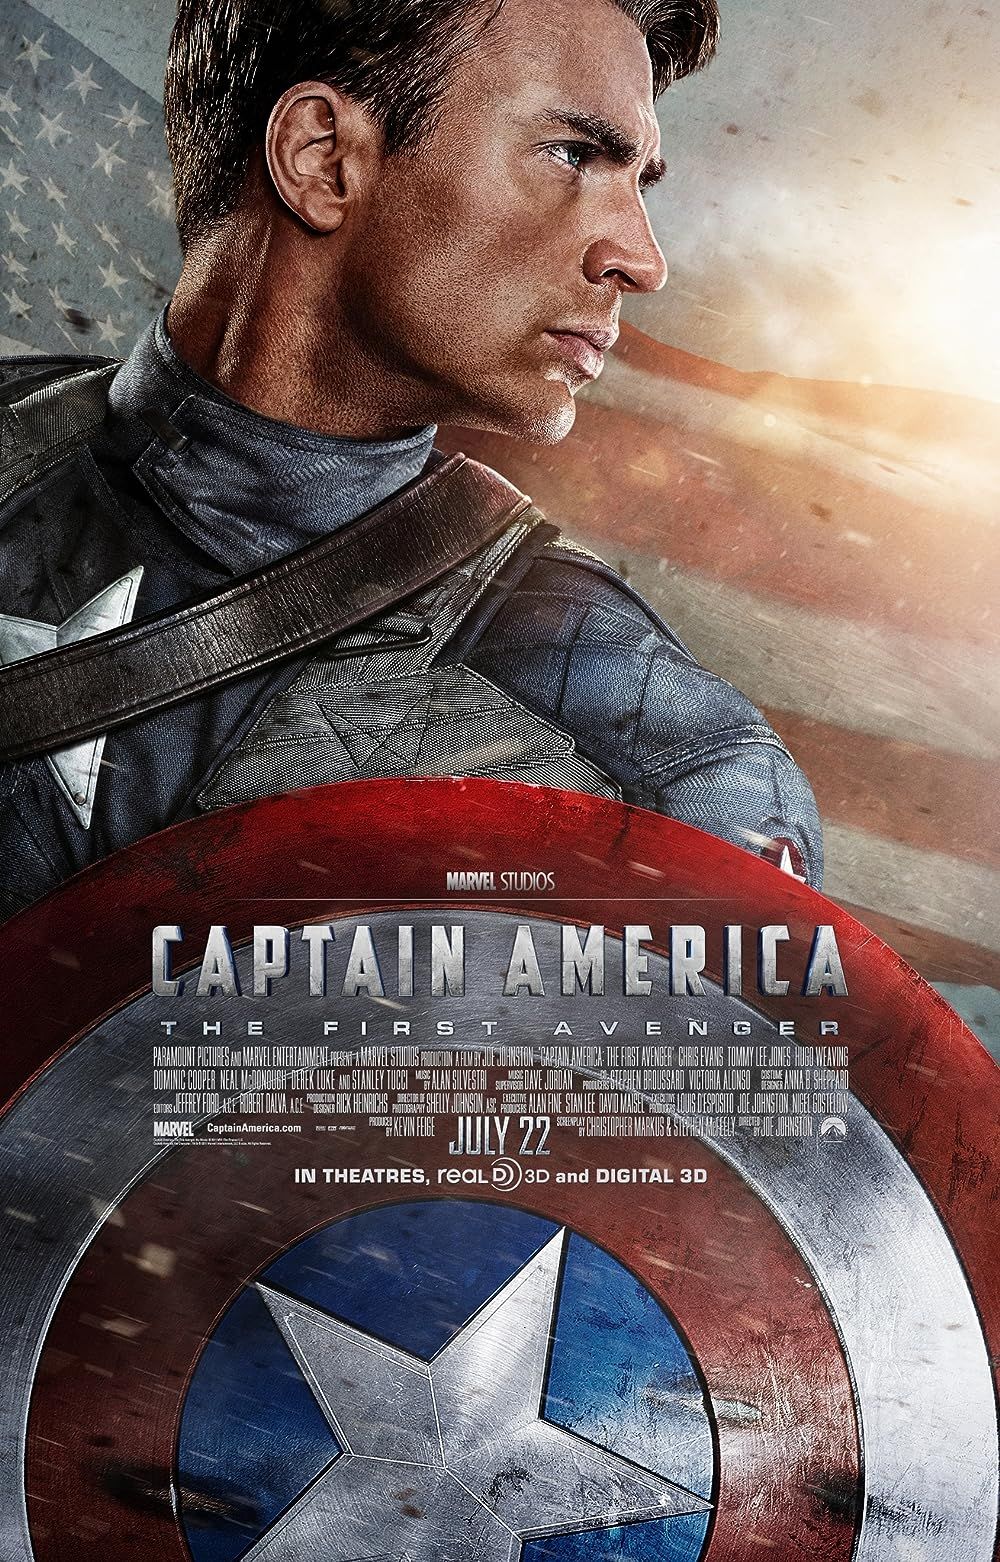 Chris Evans as Captain America on Captain America The First Avenger Poster